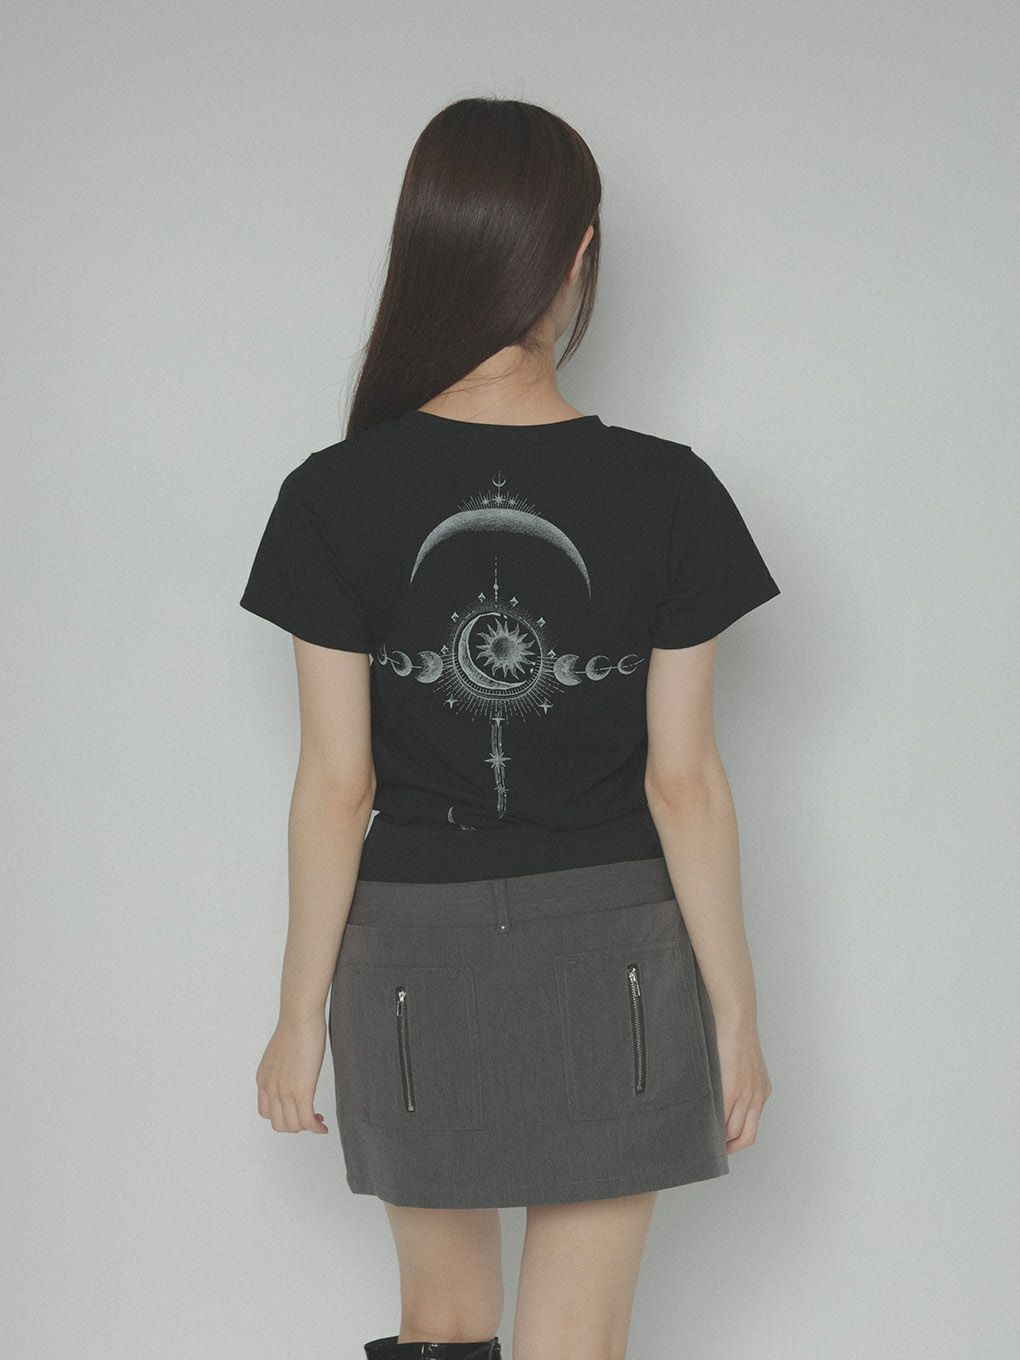 ネット店 melt the lady horoscope T-shirt(cropped) - トップス